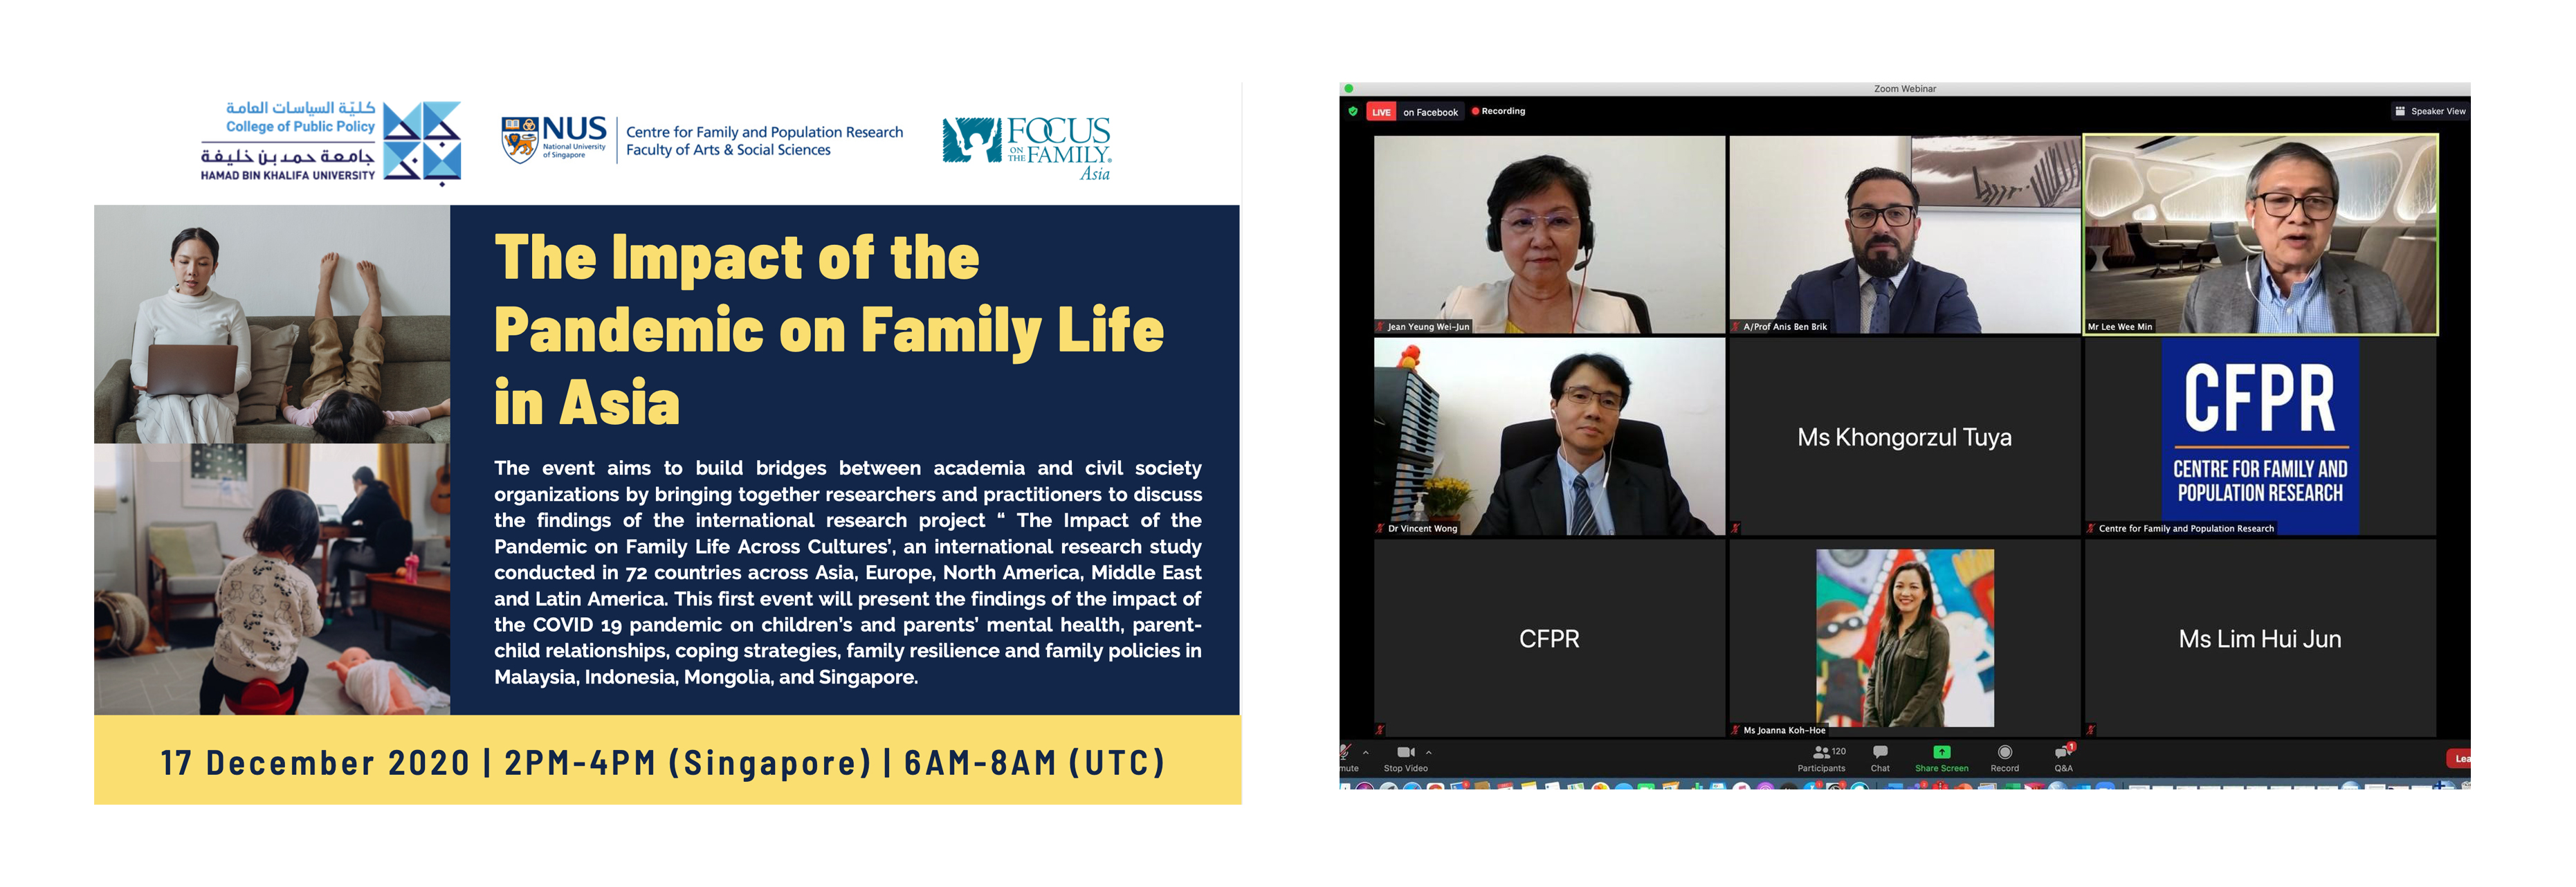 كلية السياسات العامة بجامعة حمد بن خليفة تعقد سلسلة ندوات إلكترونية حول دراسة لحياة الأسرة في ظل كوفيد-19